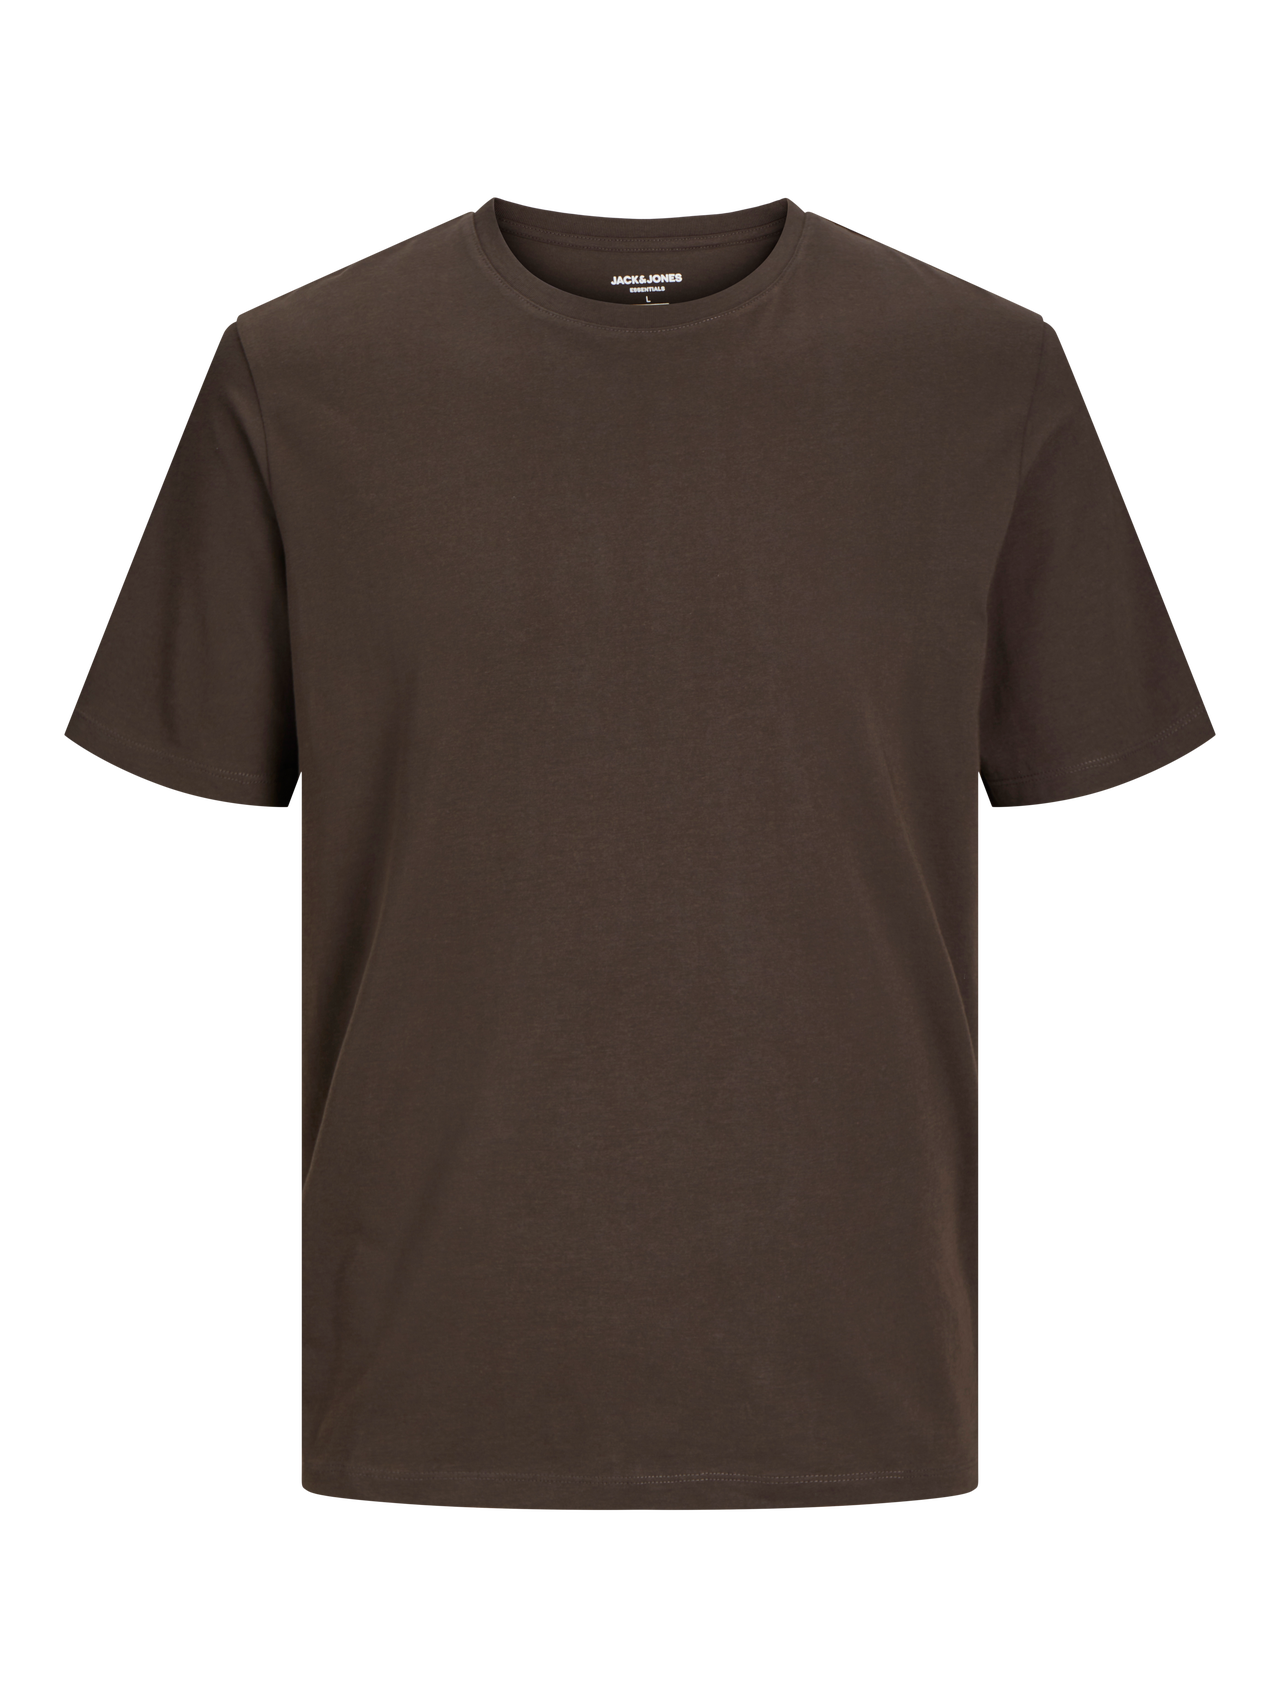 Jack & Jones Yksivärinen Pyöreä pääntie T-paita -Mulch - 12156101